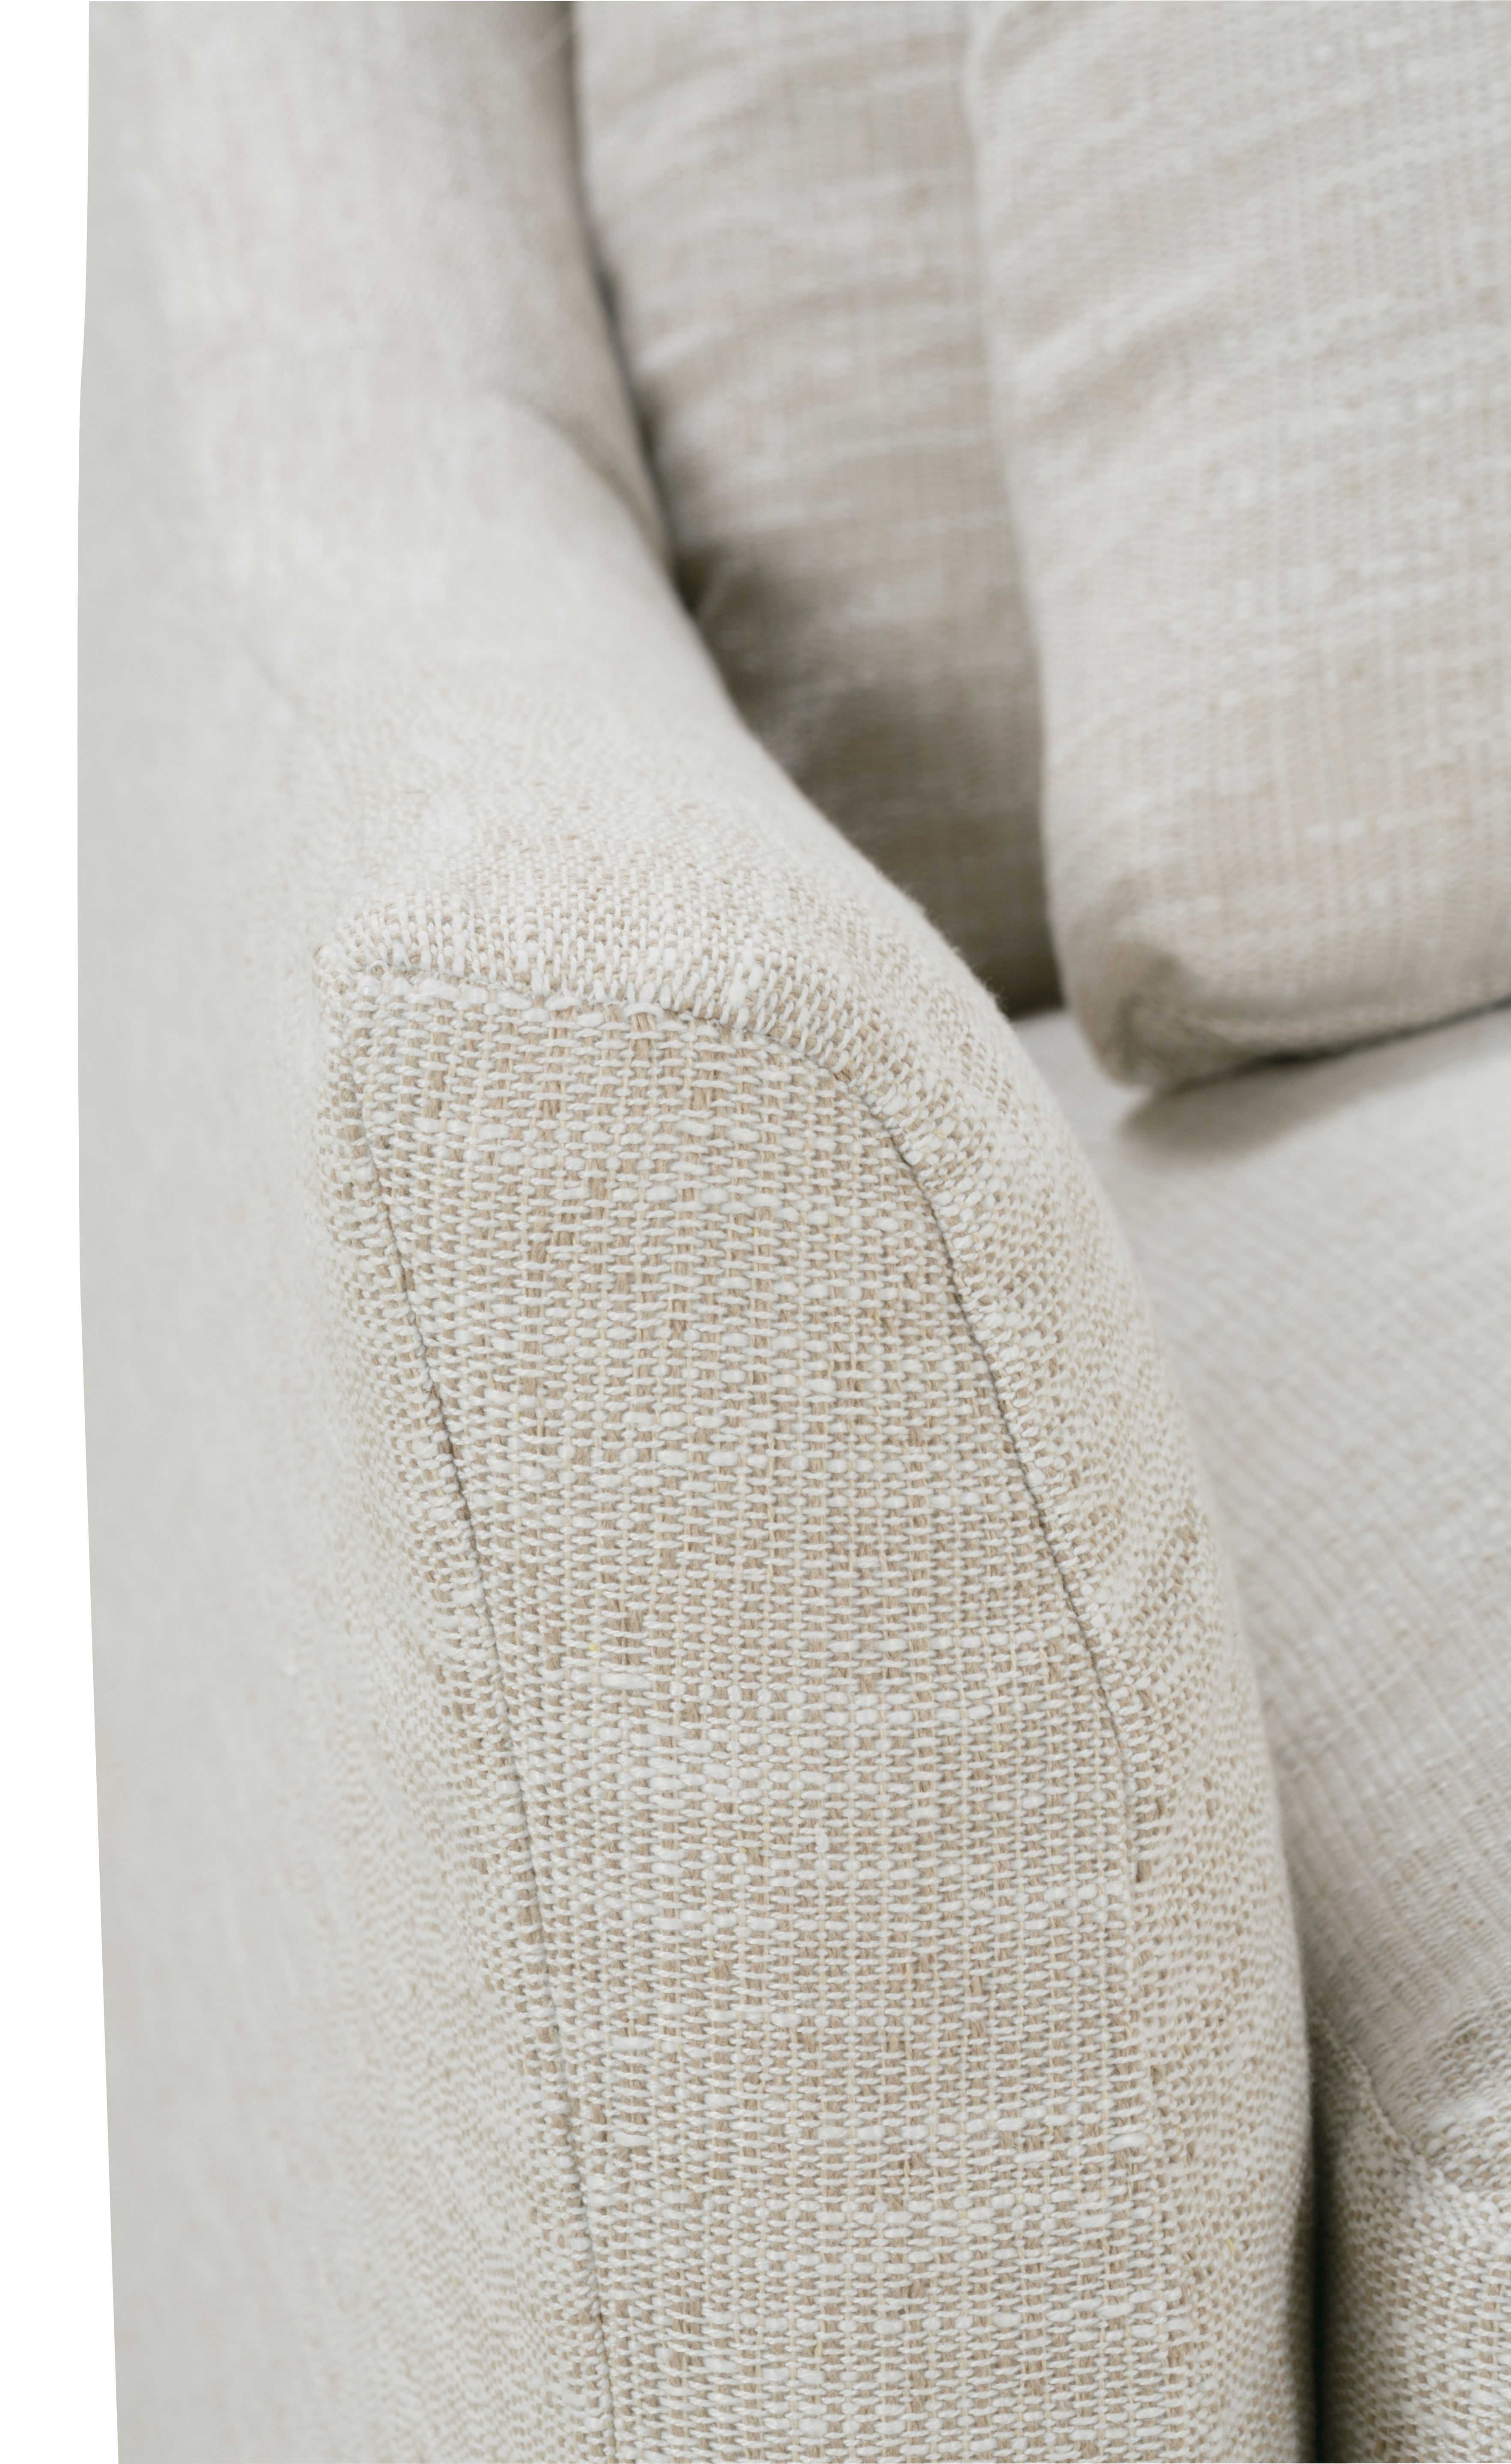 Moreau Slipcover Sofa, Bench Cushion, White, 95" - Image 3